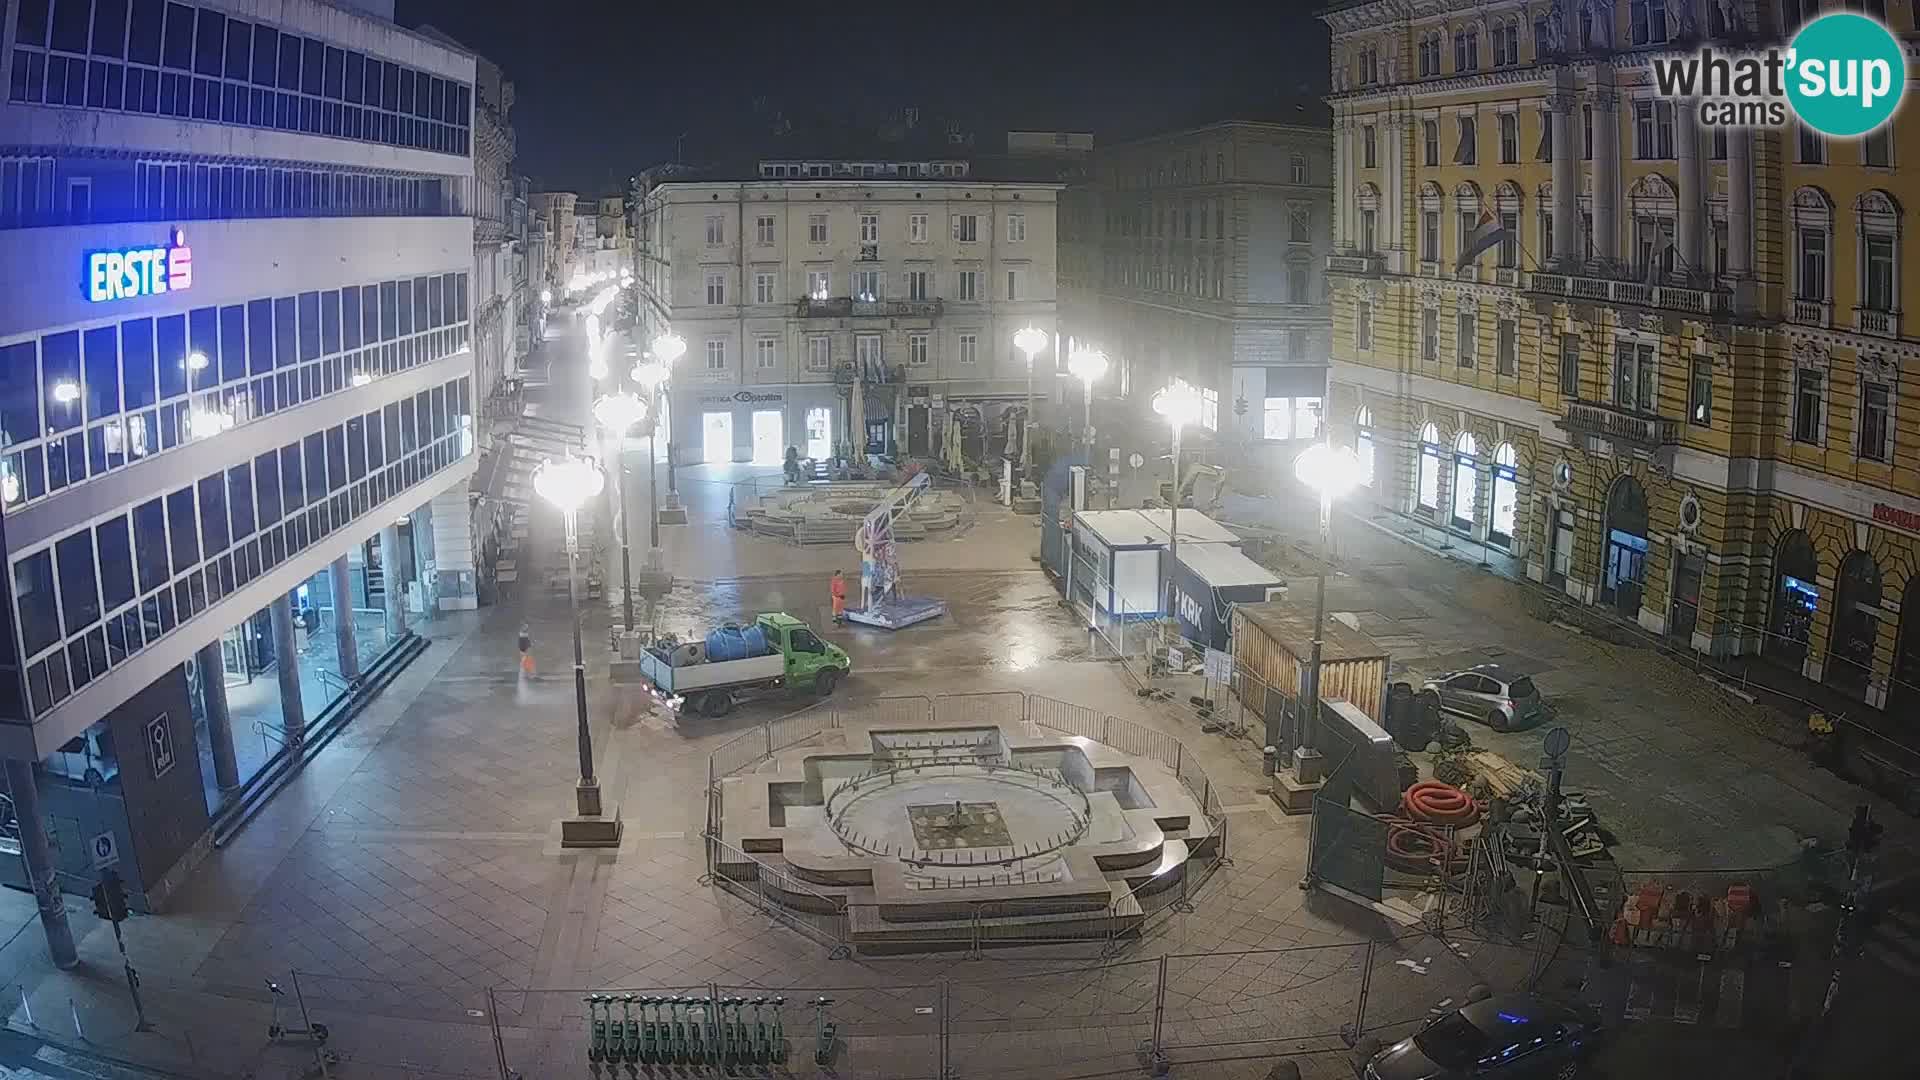 Fiume – Piazza Adriatica